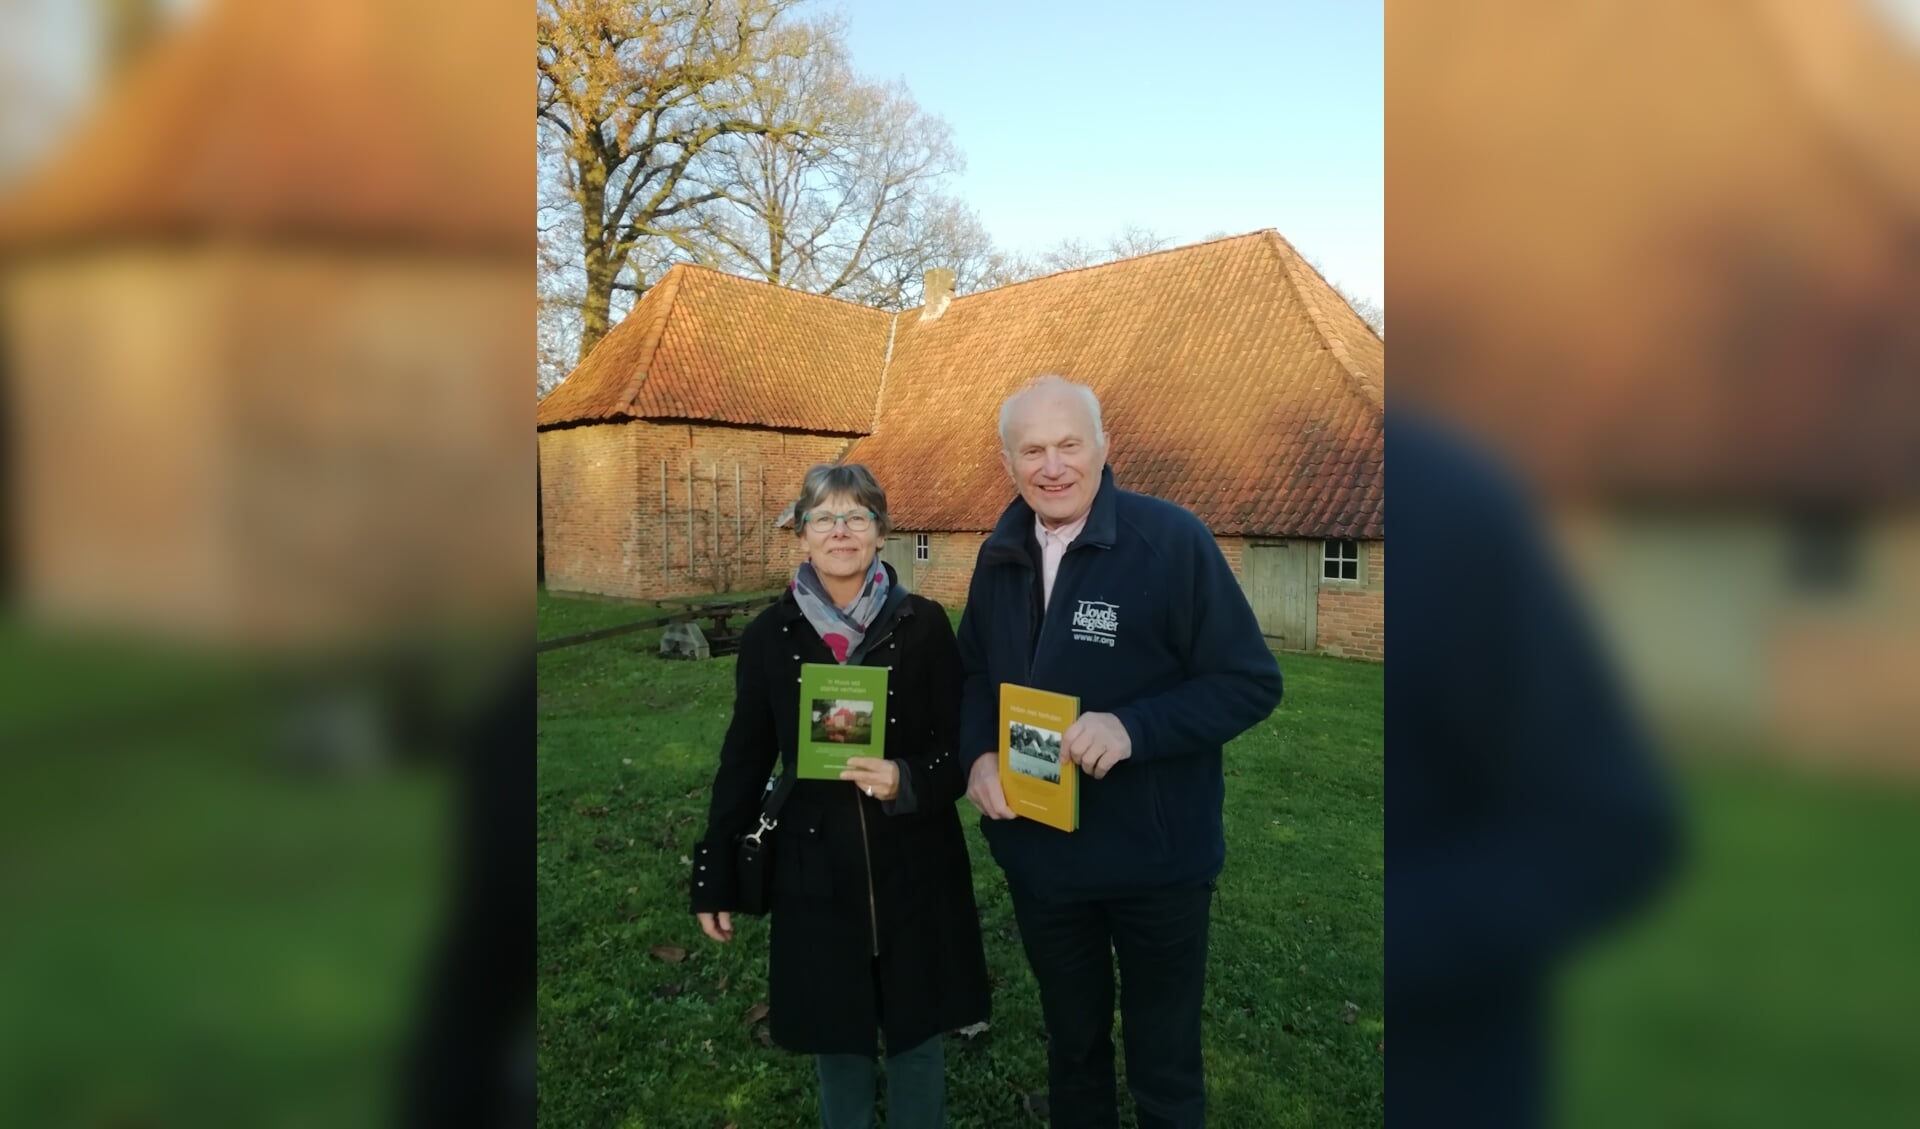 Marianne en Hendrik Weenink met hun verhalenbundels vol 'starke verhalen'.